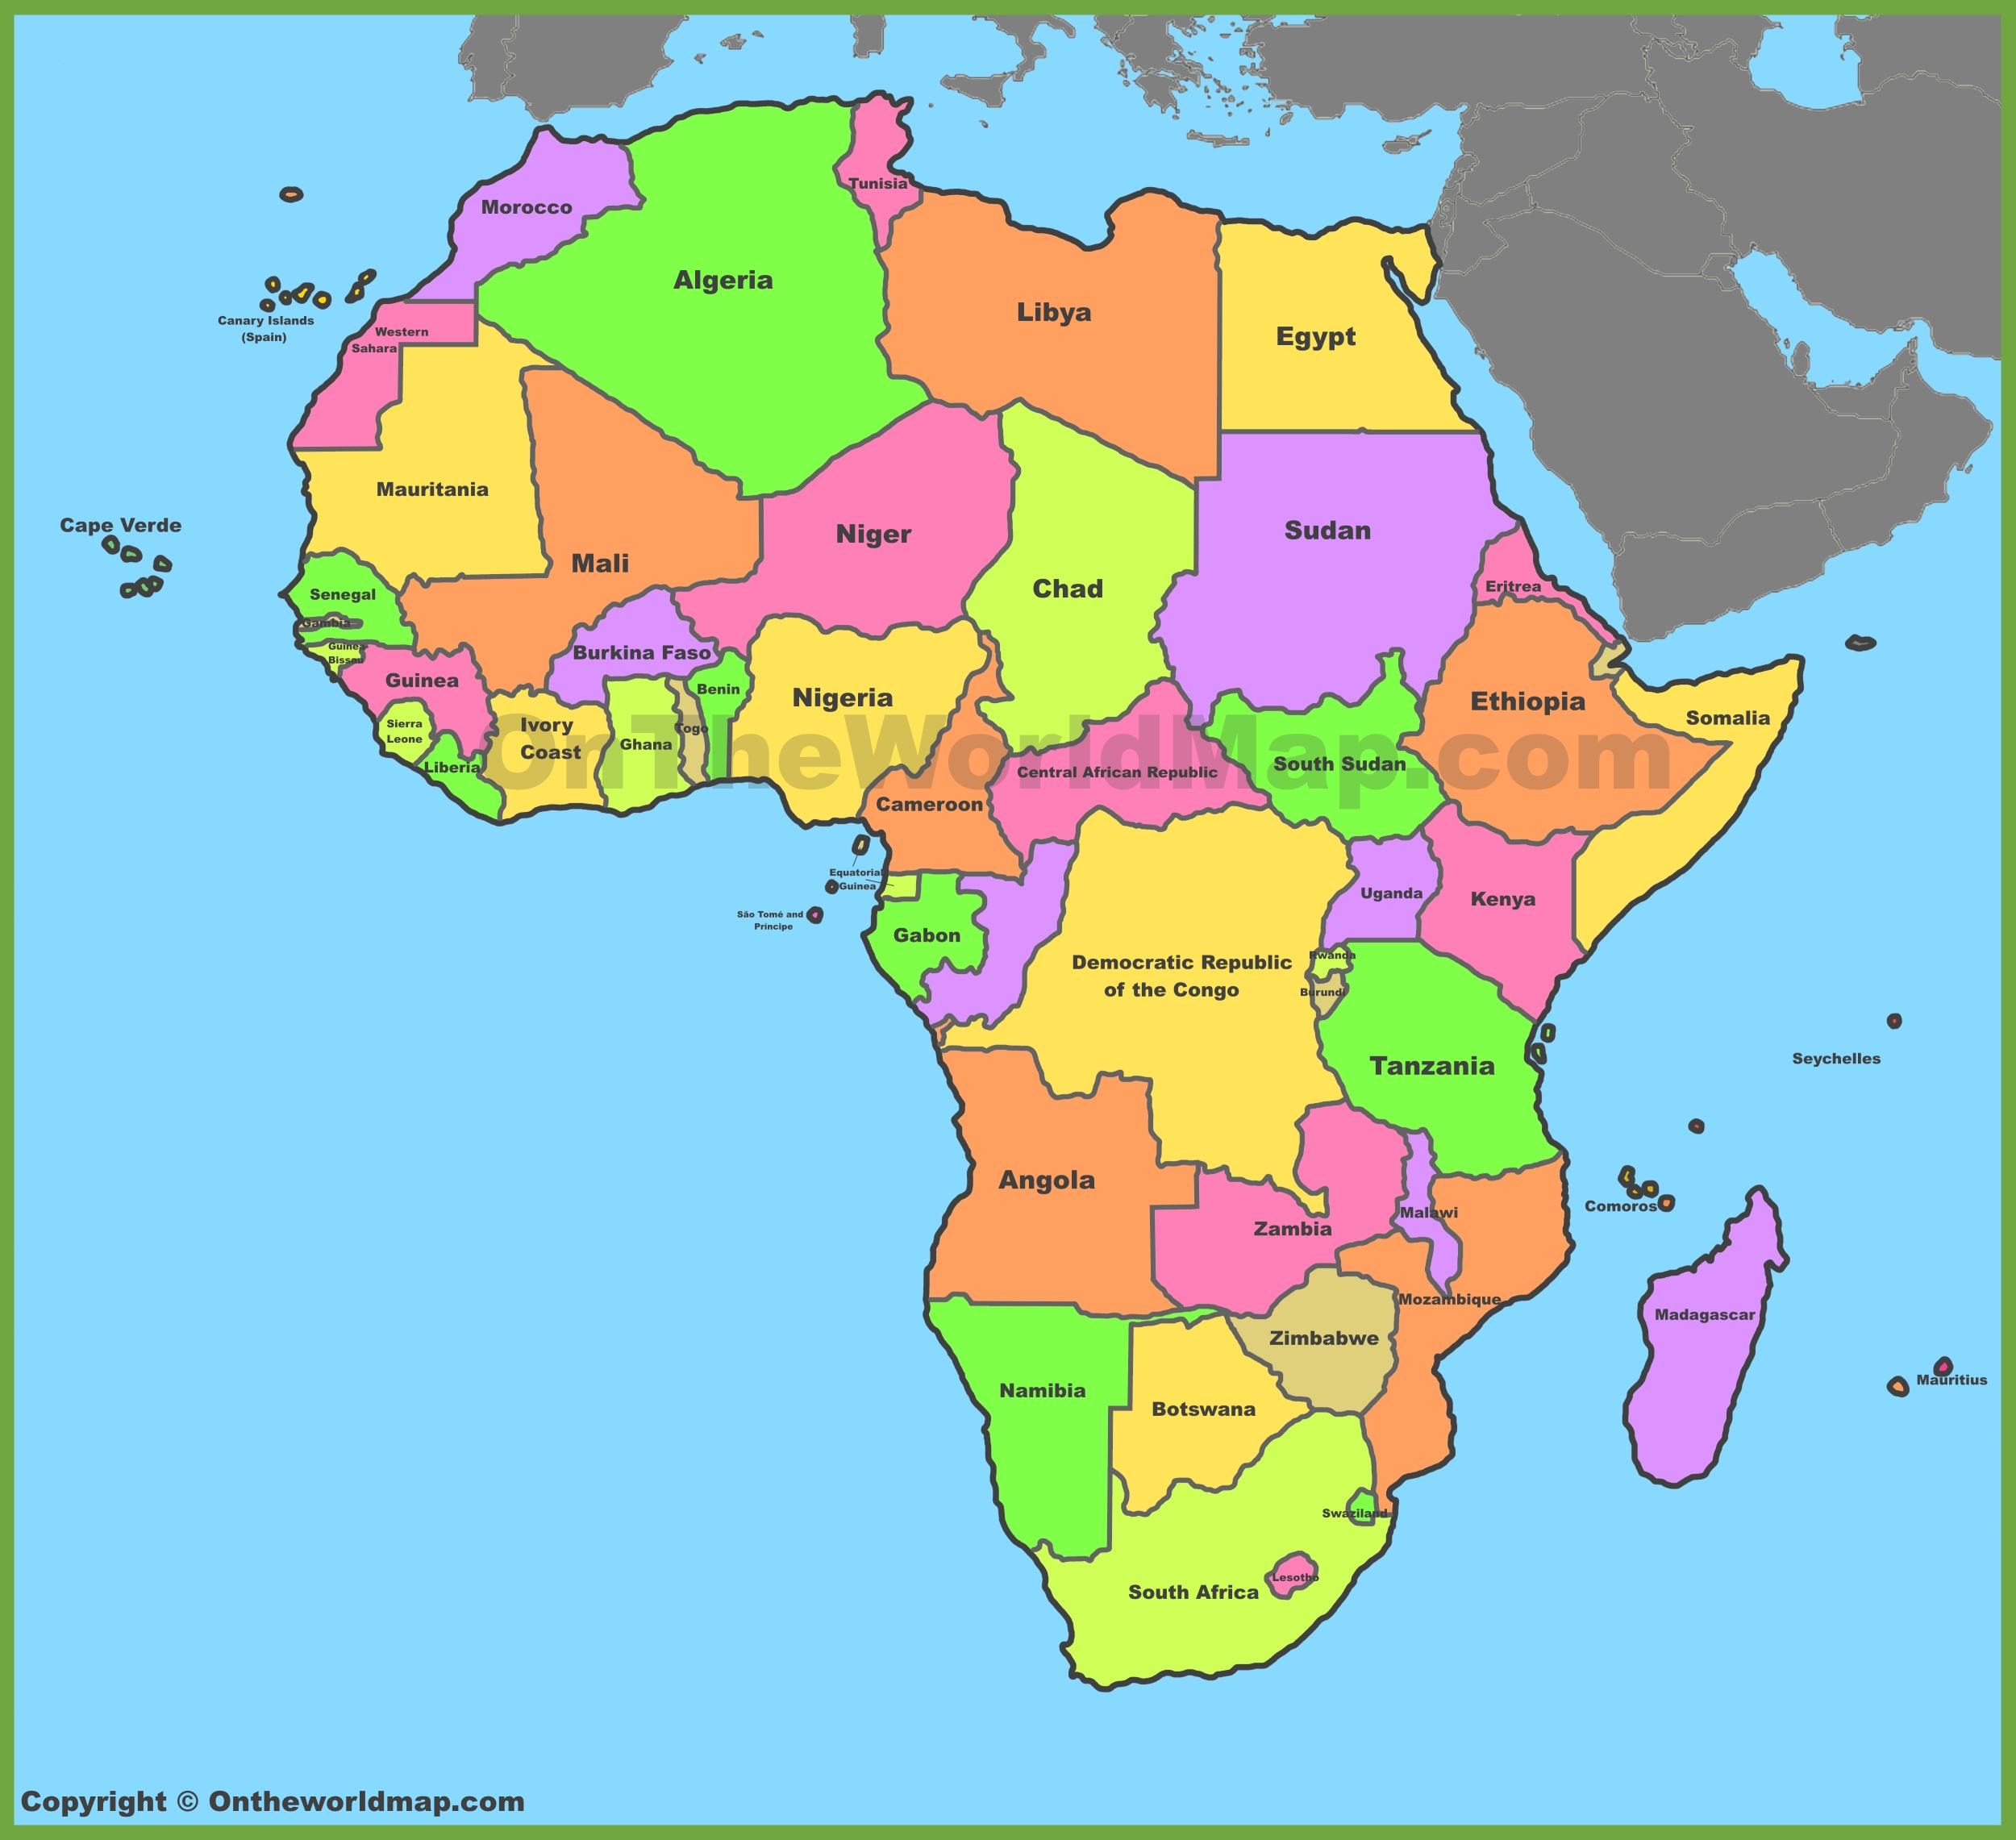 Bản đồ Châu Phi khổ lớn sẽ giúp bạn quan sát và khám phá những chi tiết đầy màu sắc của đất nước như chưa bao giờ thấy trước đây. Hãy là người đầu tiên tìm hiểu nó!